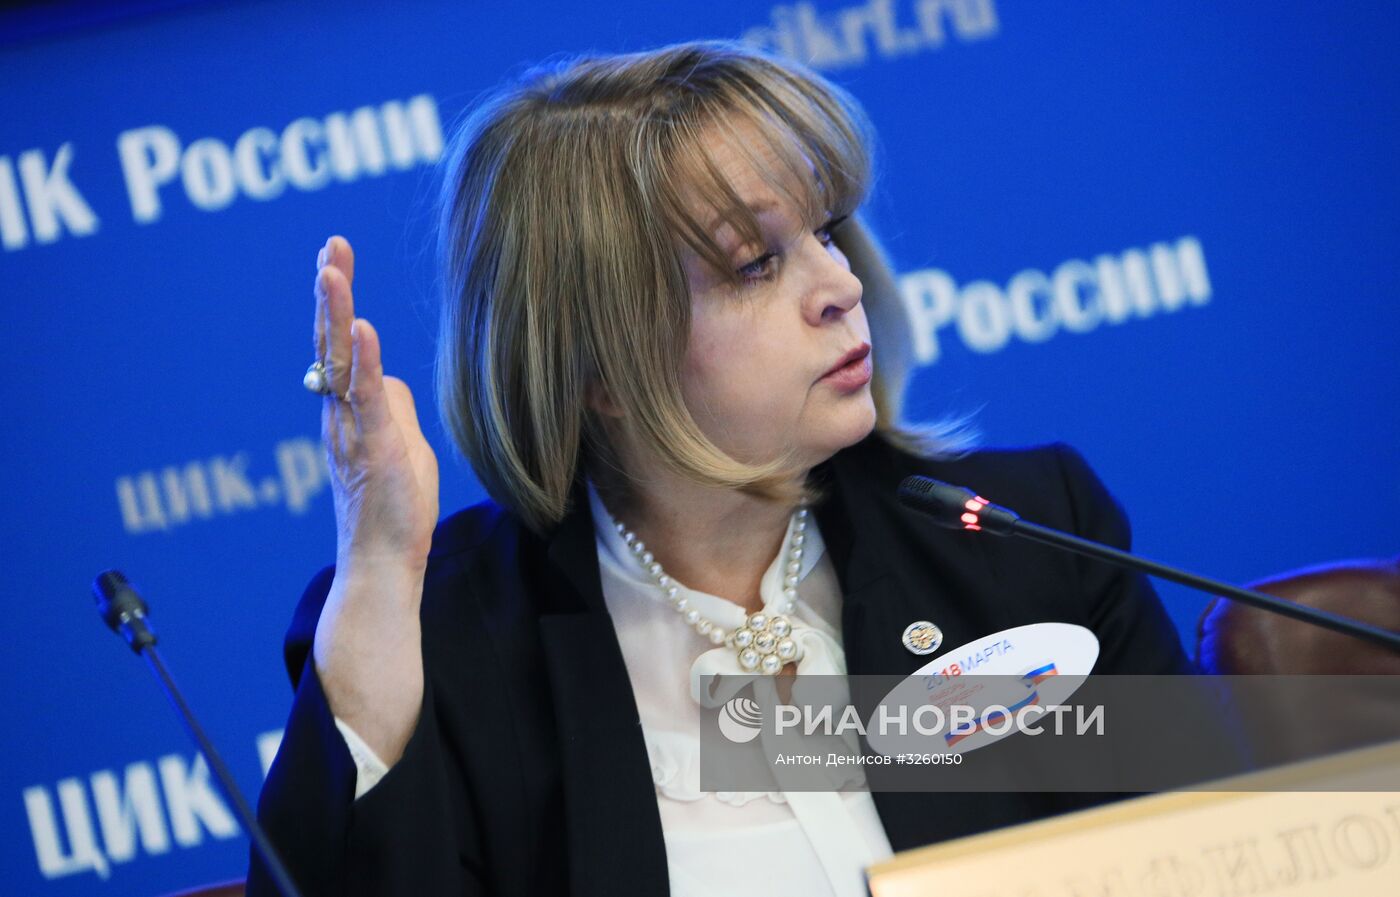 Заседание ЦИК РФ, посвященное старту избирательной кампании по выборам президента РФ